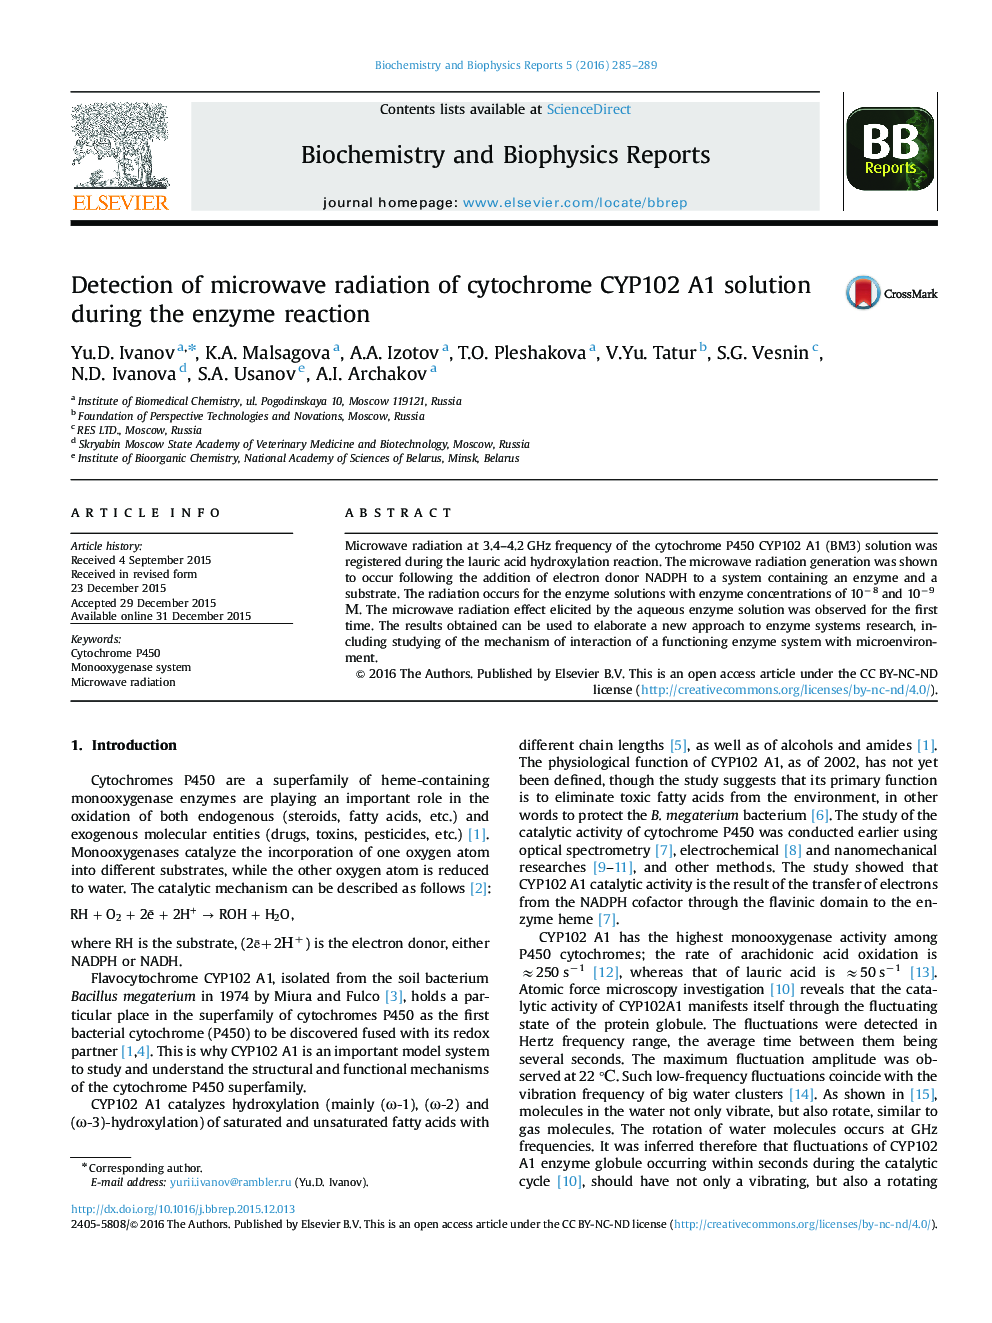 تشخیص تابش میکروویو محلول سیتوکروم CYP102A1 در طی واکنش آنزیم